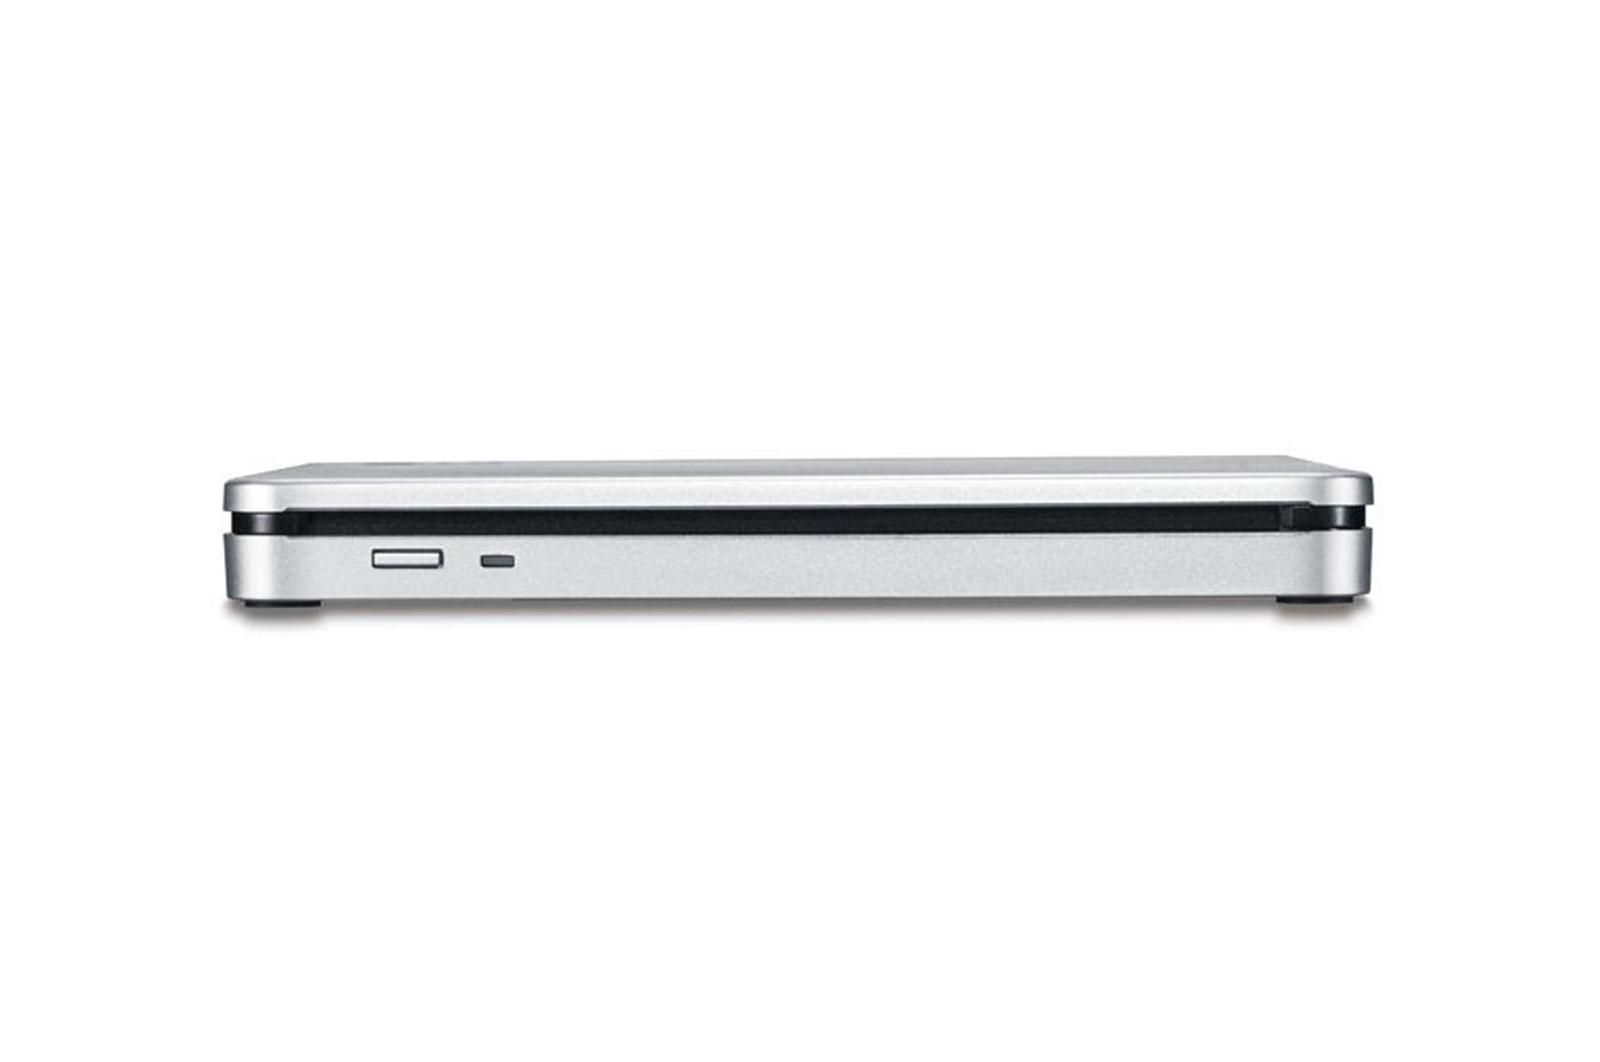 Ultra Slim Portable DVD-R Black Hitachi-LG GP60NB60.AUAE12B, GP60NB60 Series, DVD Write /Read Speed: 8x, CD Write/Read Speed: 24x, USB 2.0, Buffer 0.75MB, 144 mm x 137.5 mm x 14 mm._4